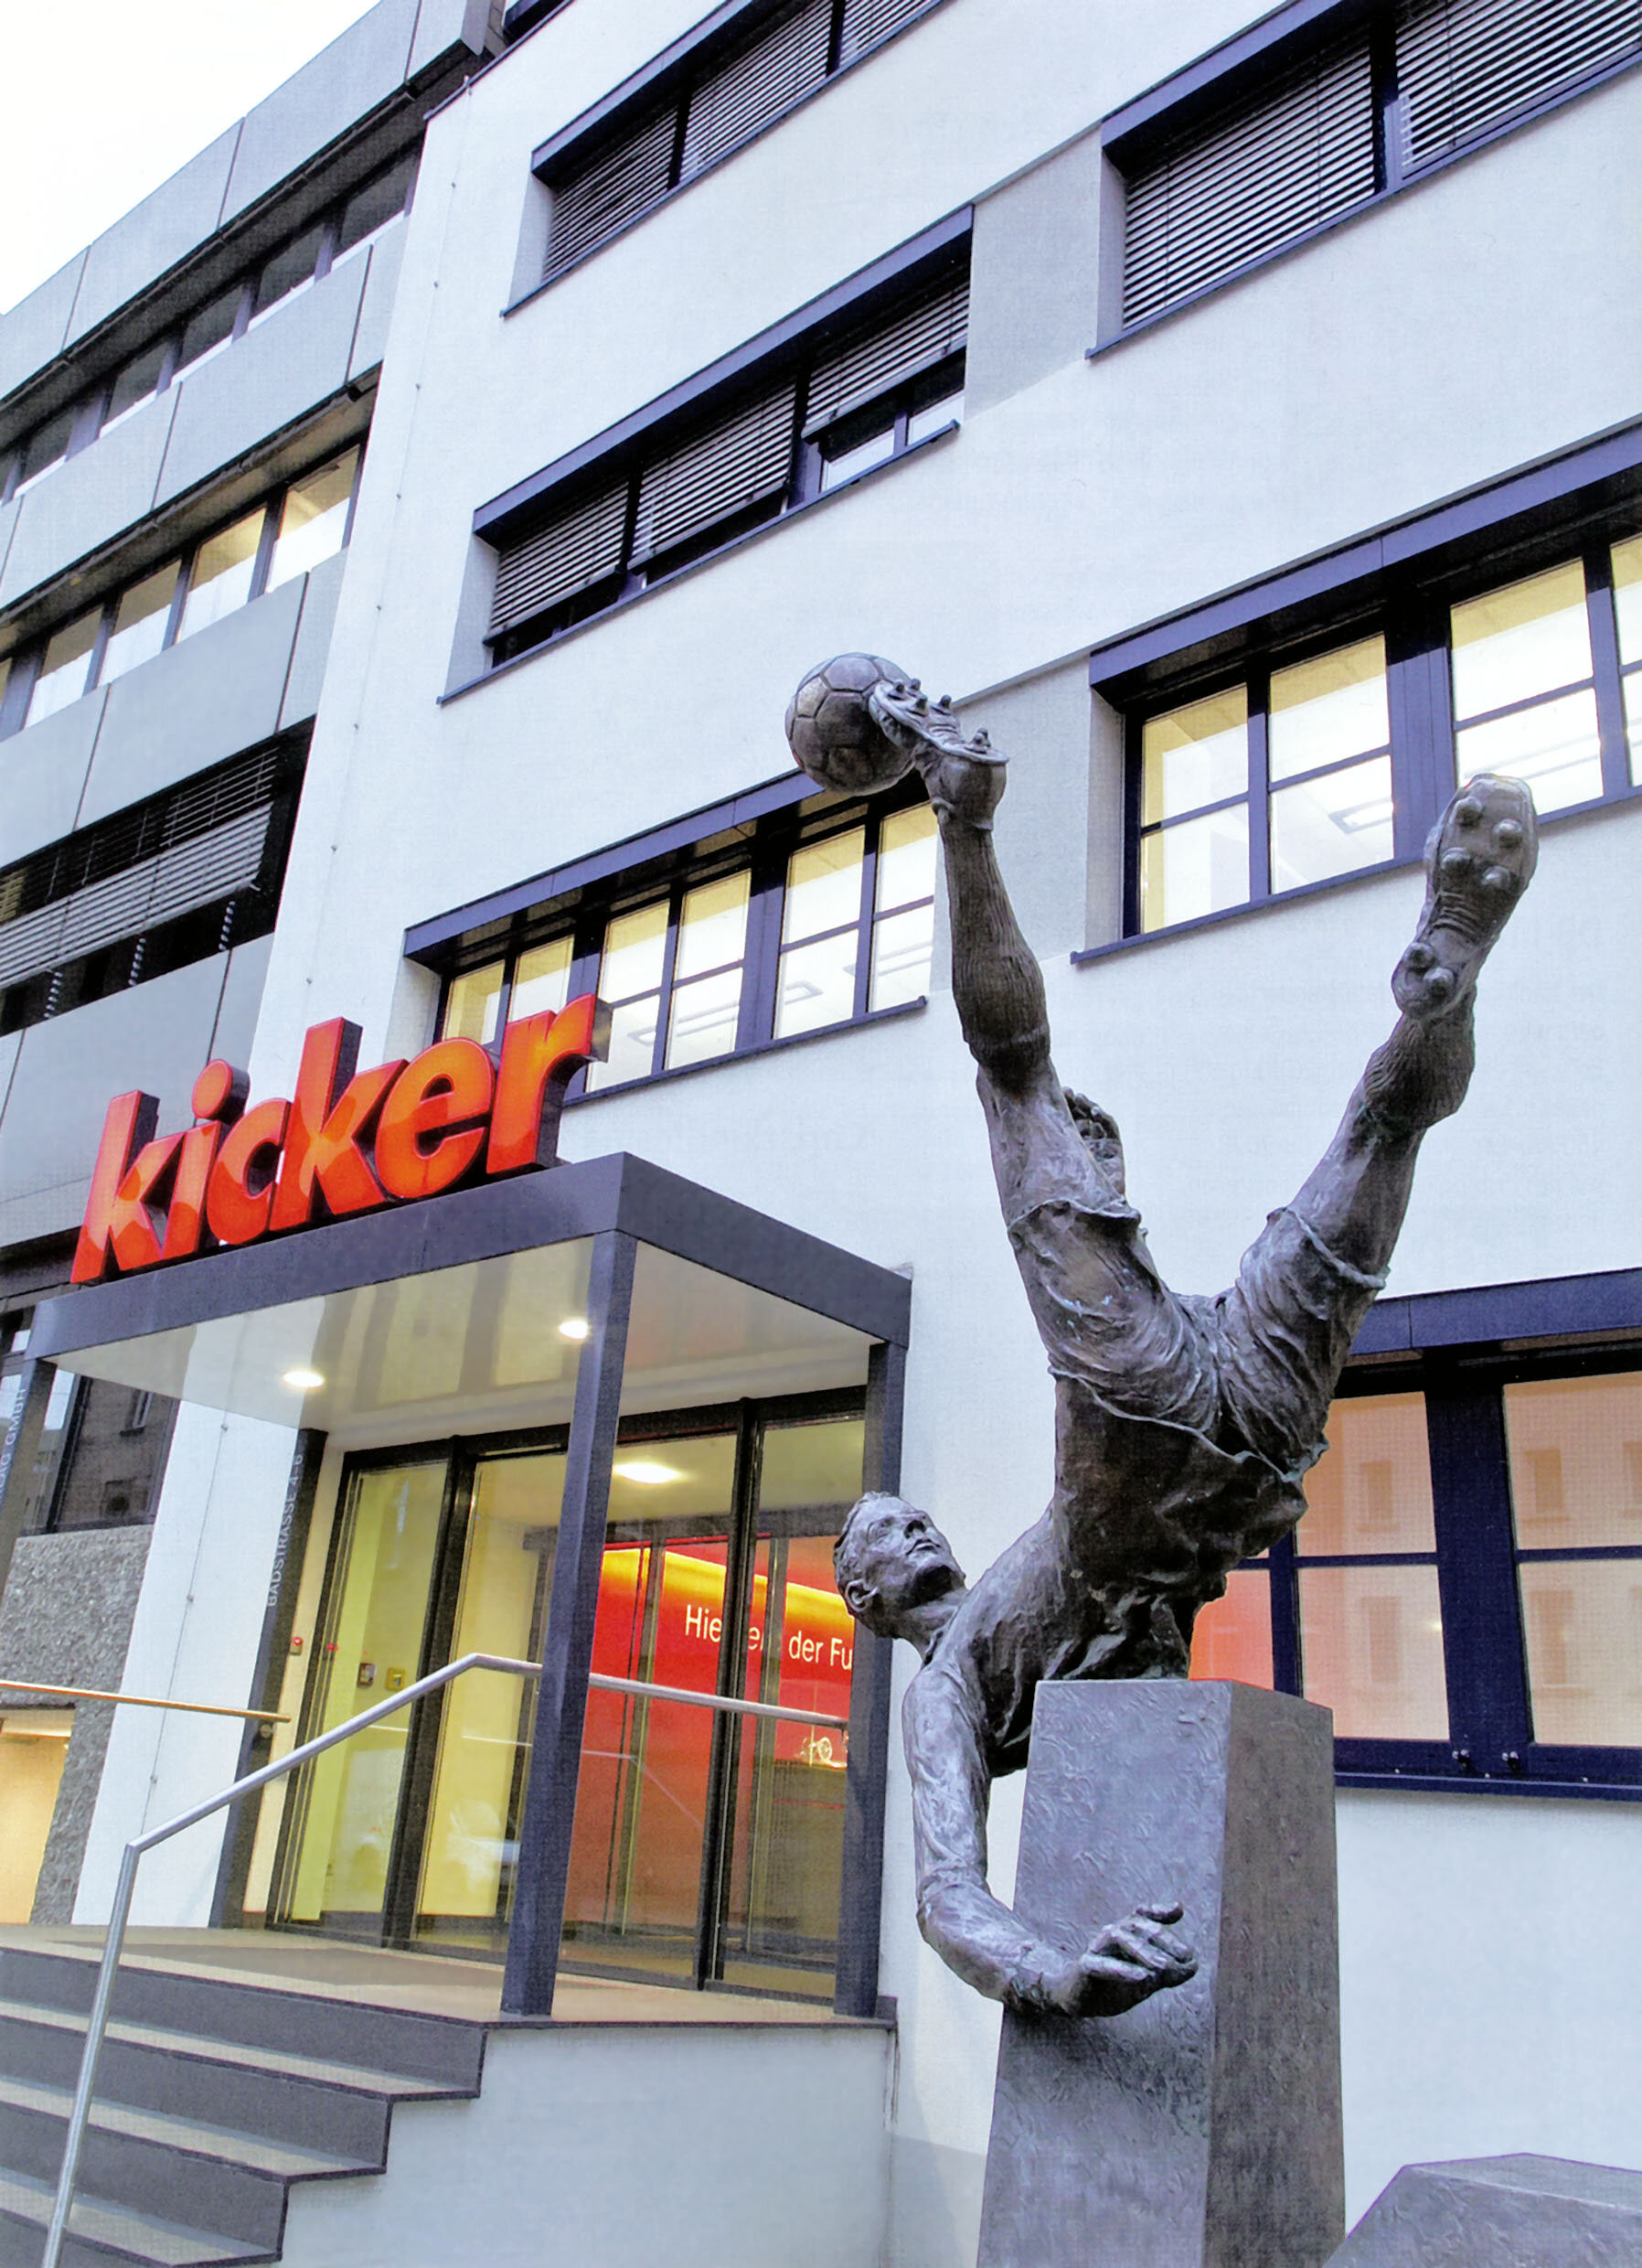 Die noch heute in der Blumenstraße existierende erste deutsche Fußballmagazin „Kicker“ wurde 1920 durch den jüdischen Fußballpionier Walther Bensemann gegründet.